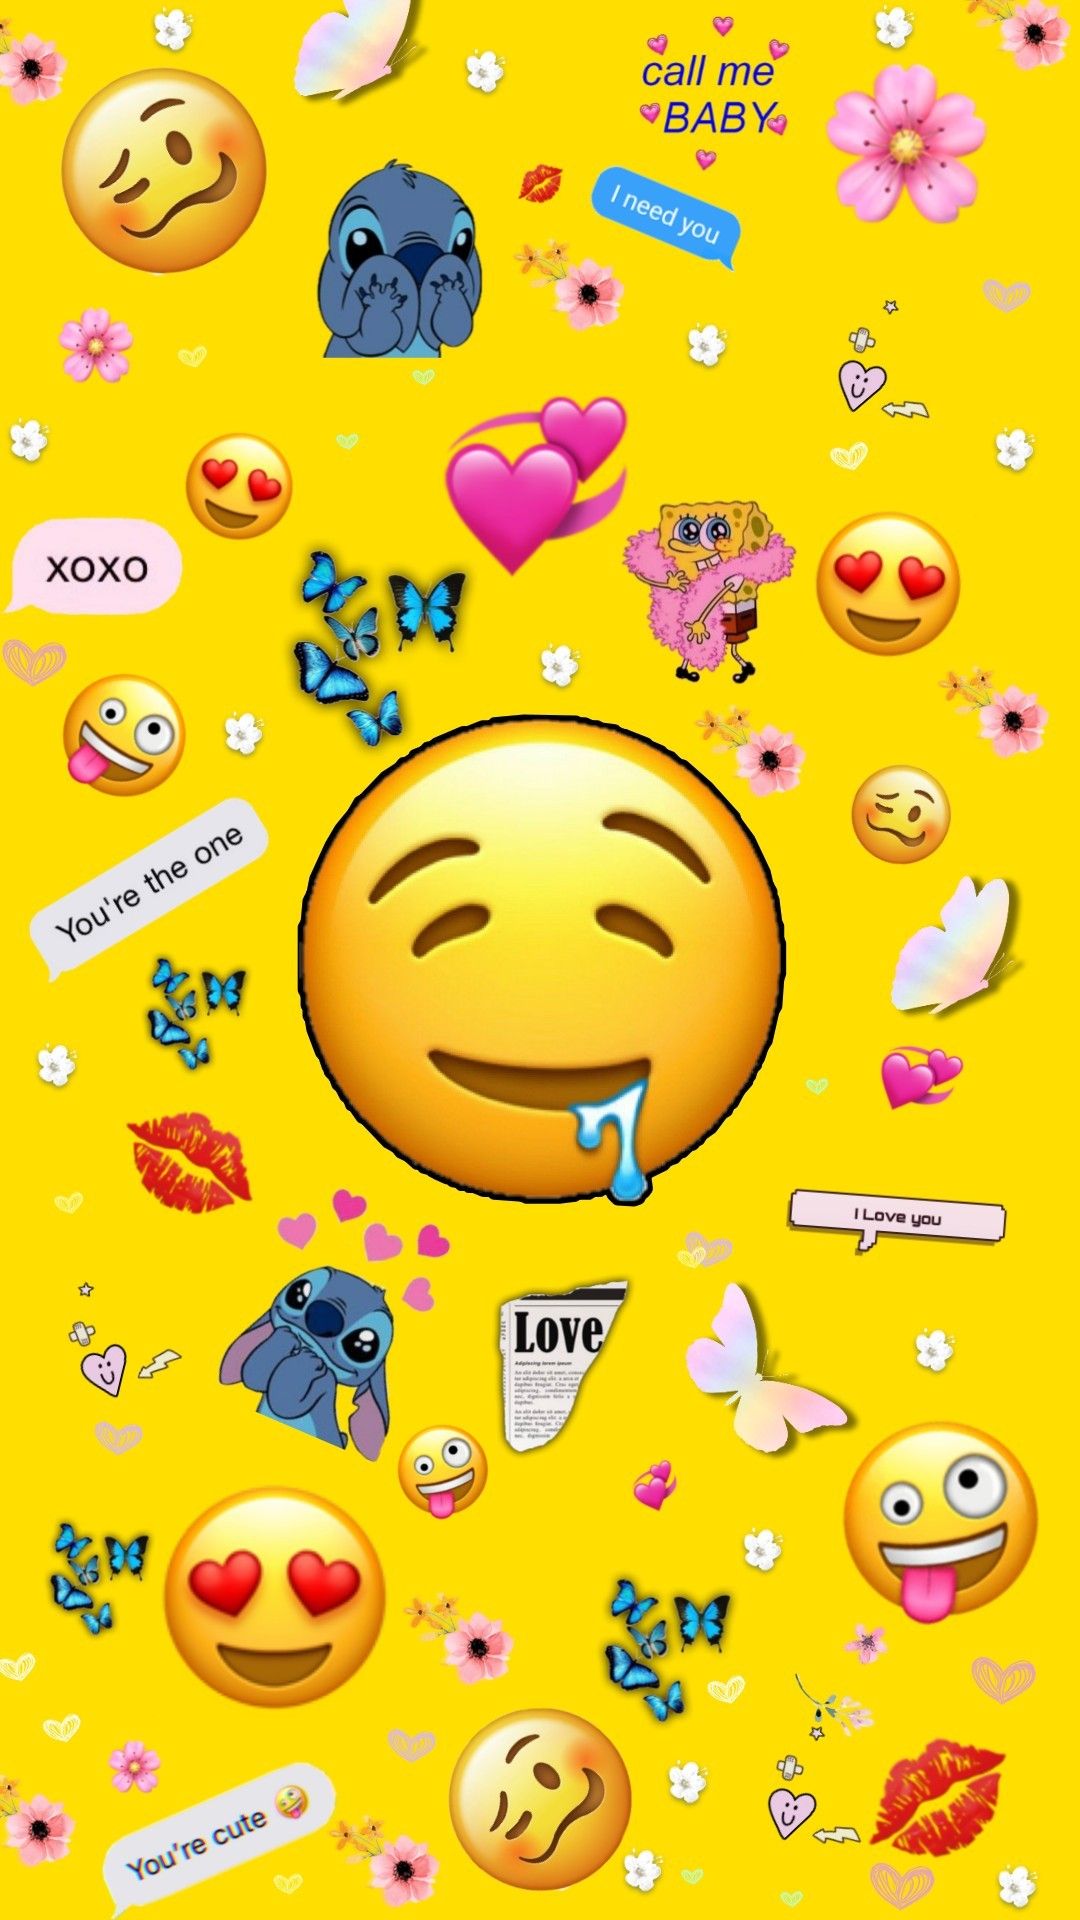 Emoji wallpaper ideas. emoji wallpaper, emoji, wallpaper